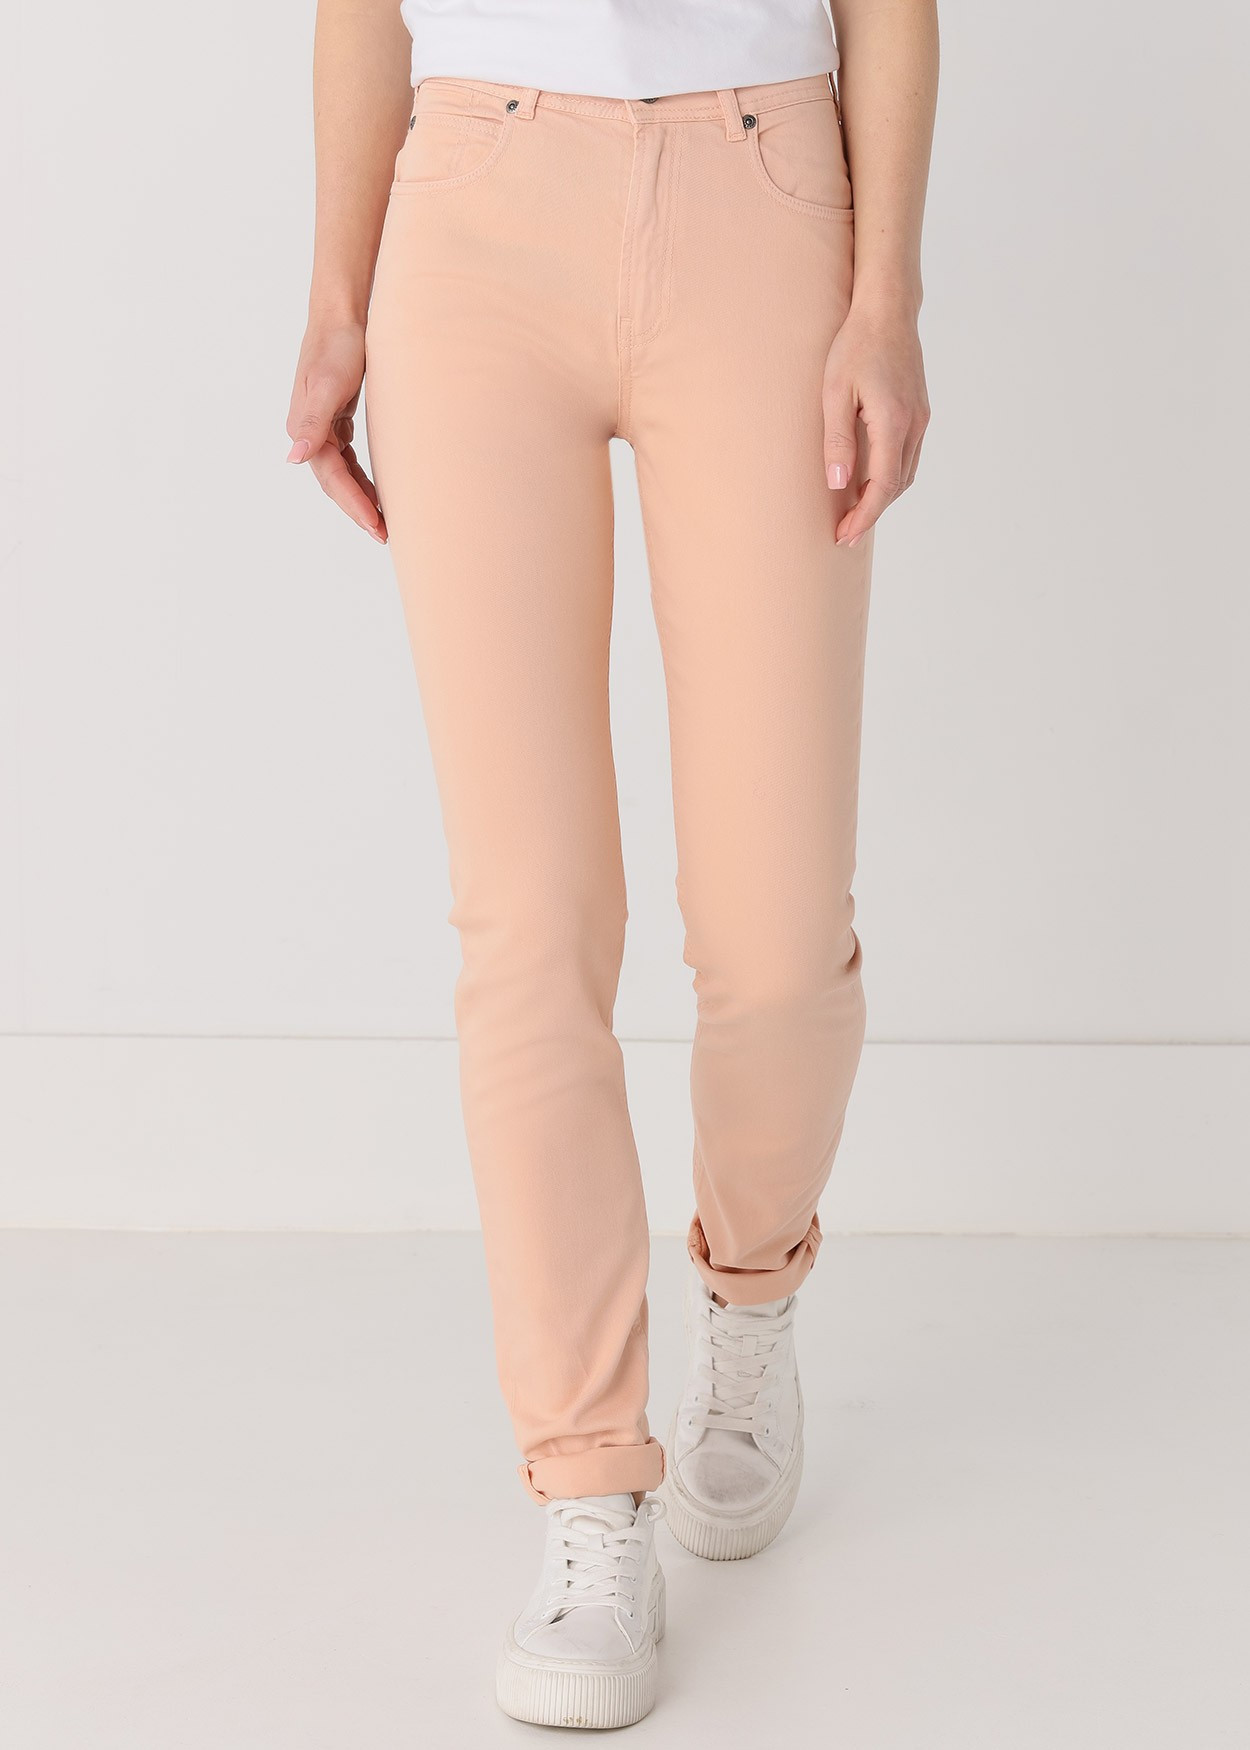 Jeans Nouflore-Pigm |Taille naturelle - Slim | Taille en pouces Cimarron